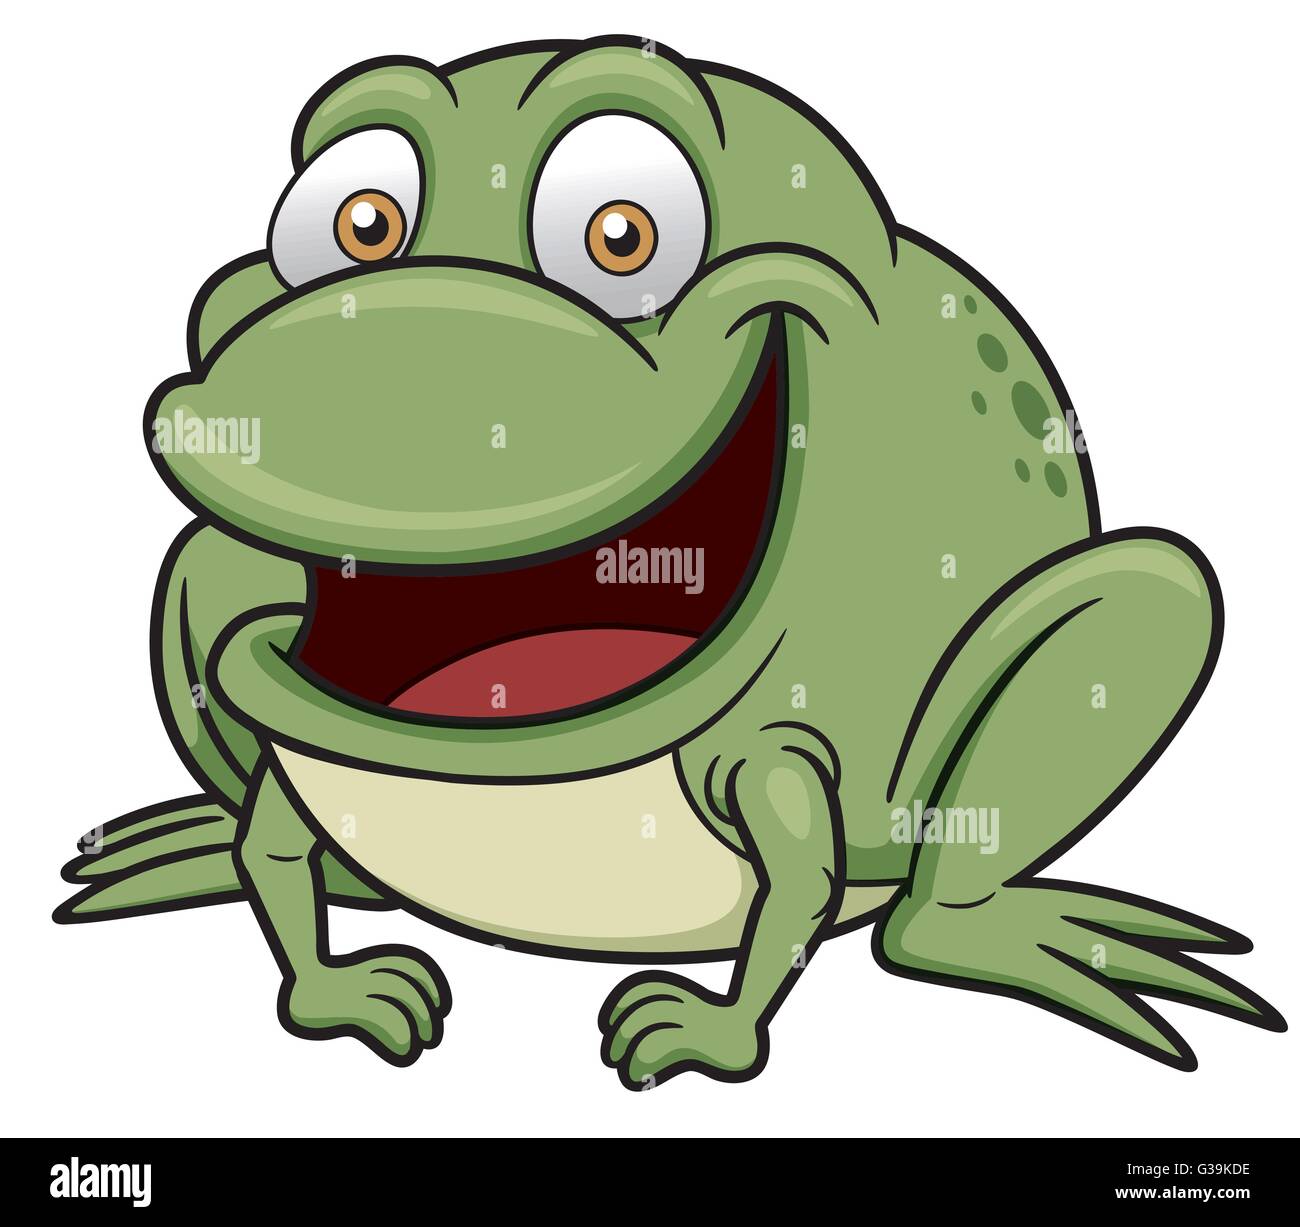 Vektor-Illustration der Frosch-Cartoon Stock Vektor